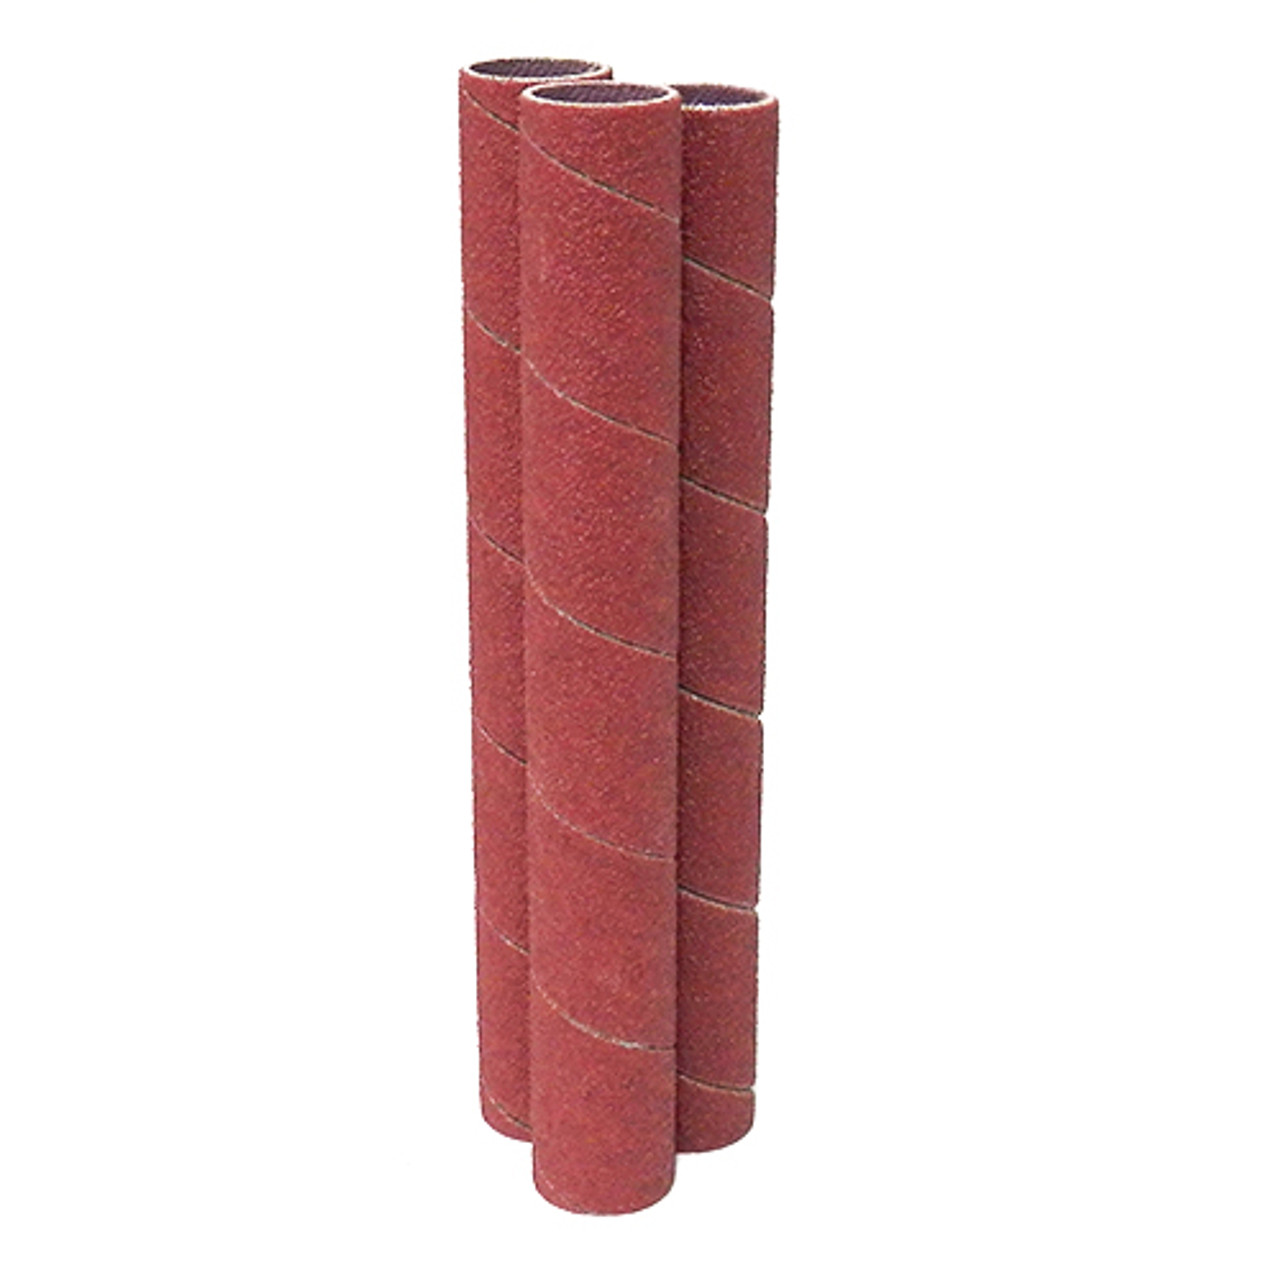 Klingspor Abrasives Aluminum Oxide Sanding Sleeves, 1/2"X 4-1/2" 150 Grit, 3pk